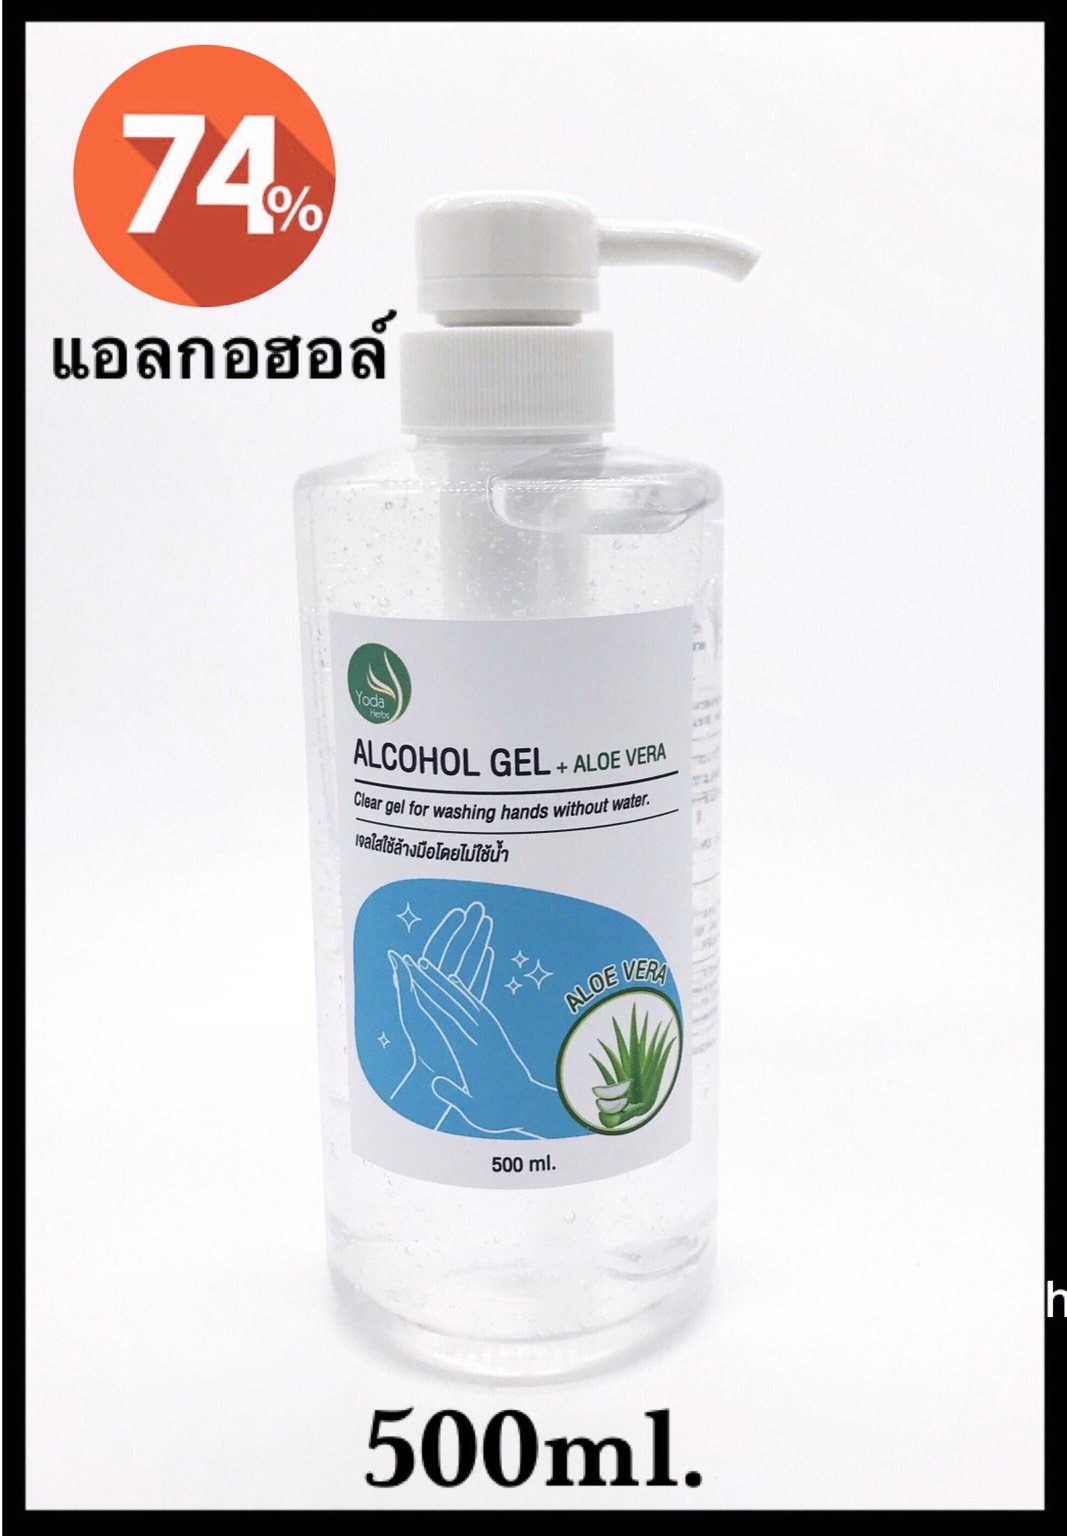 Yoda Herbs Alcohol Gel - Flexi Pump 500ml - เจลแอลกอฮอล์ 74% V/V